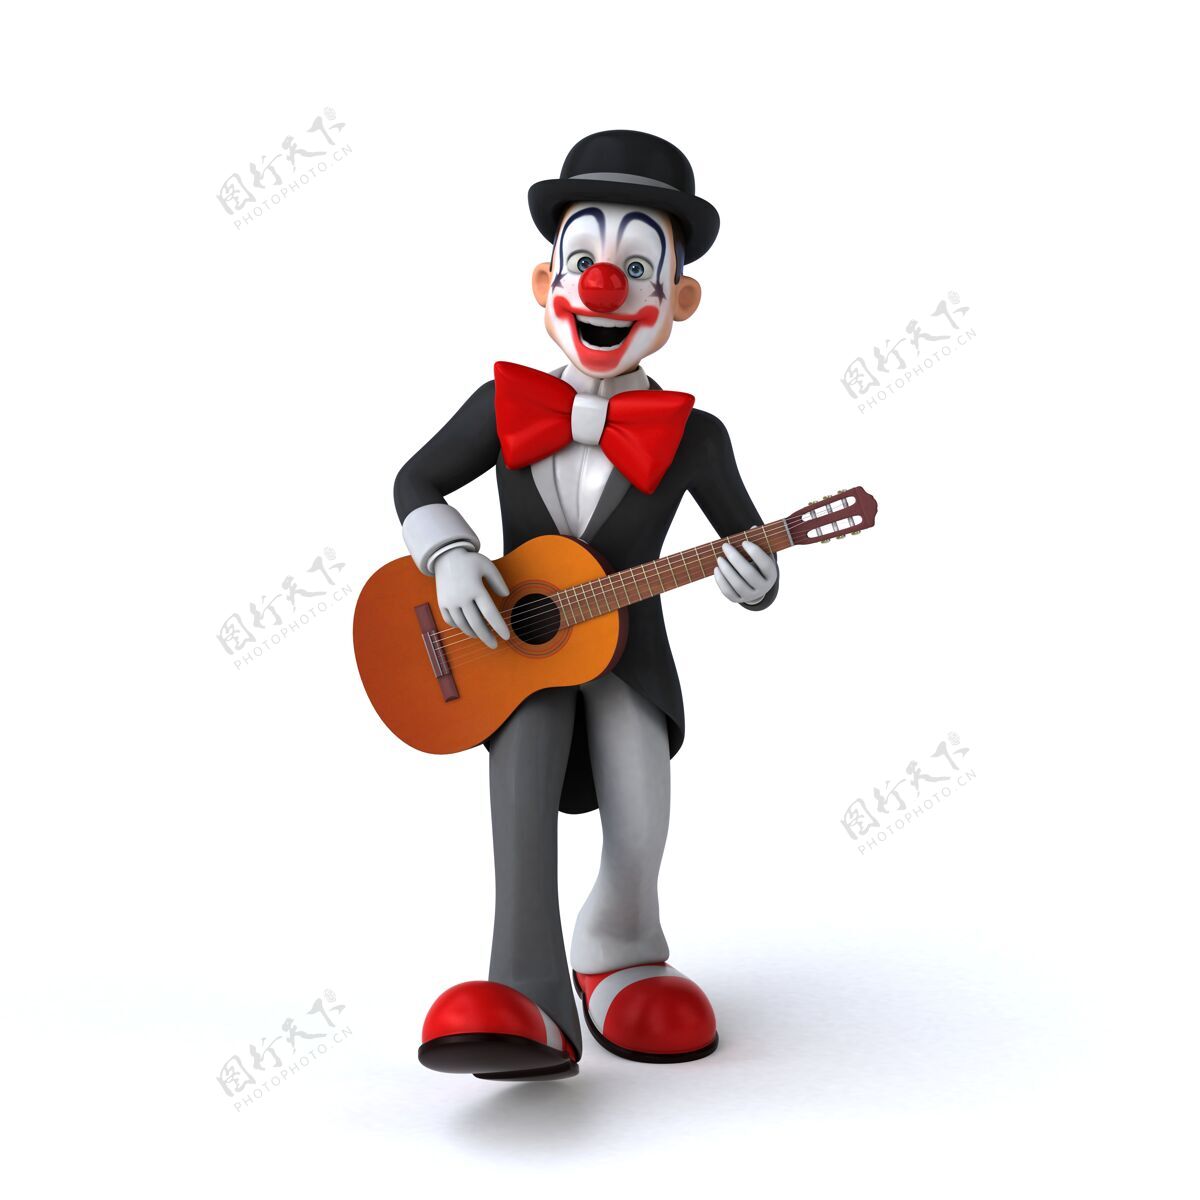 马戏团有趣的小丑的有趣插图音乐男人鼻子